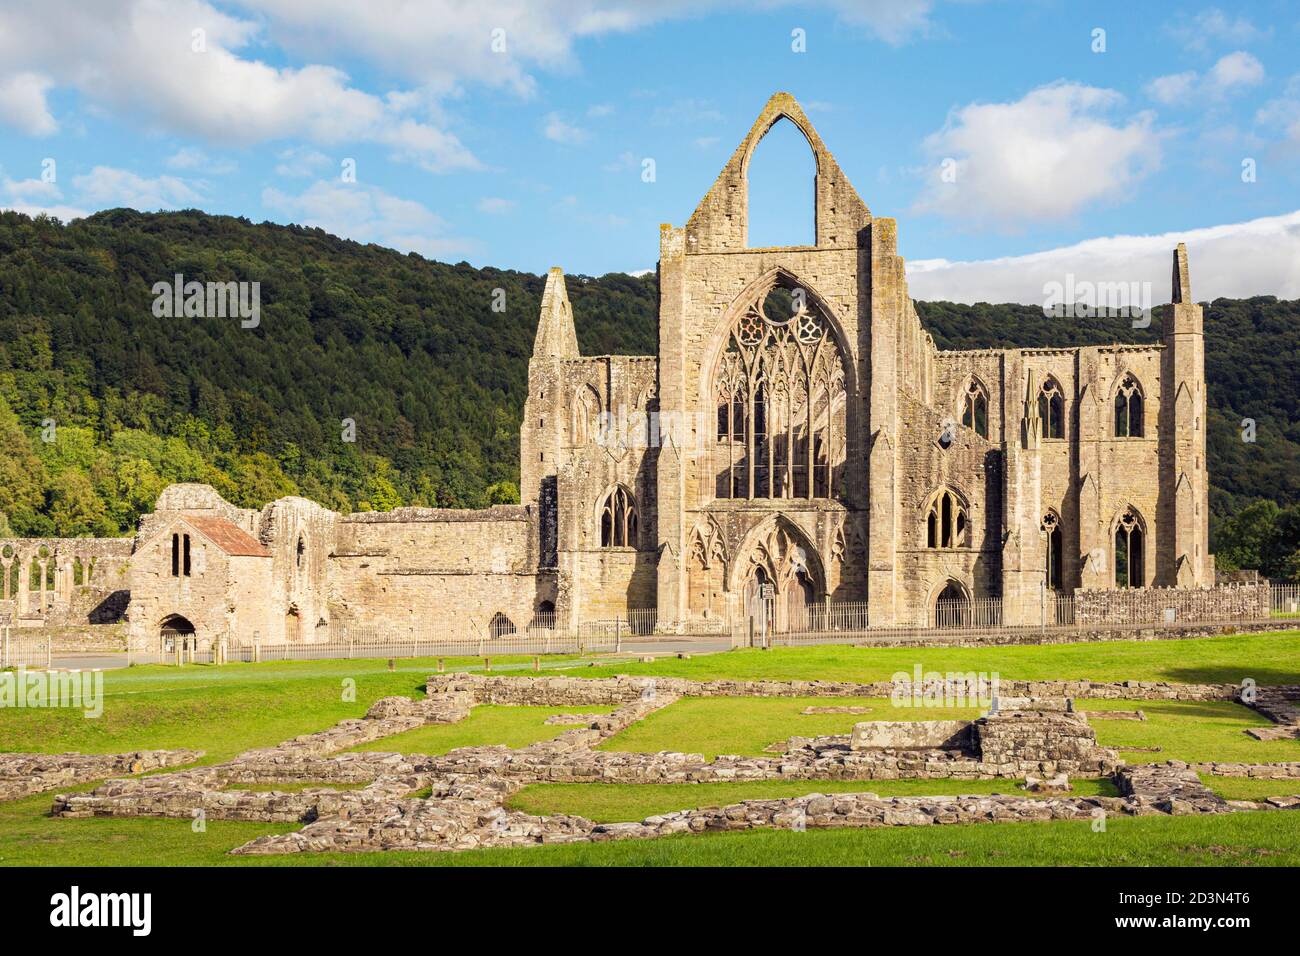 Abbaye de Tintern, Monbucshire, pays de Galles, Royaume-Uni. L'abbaye cistercienne tomba en ruine après la dissolution des monastères sous le règne du roi Banque D'Images